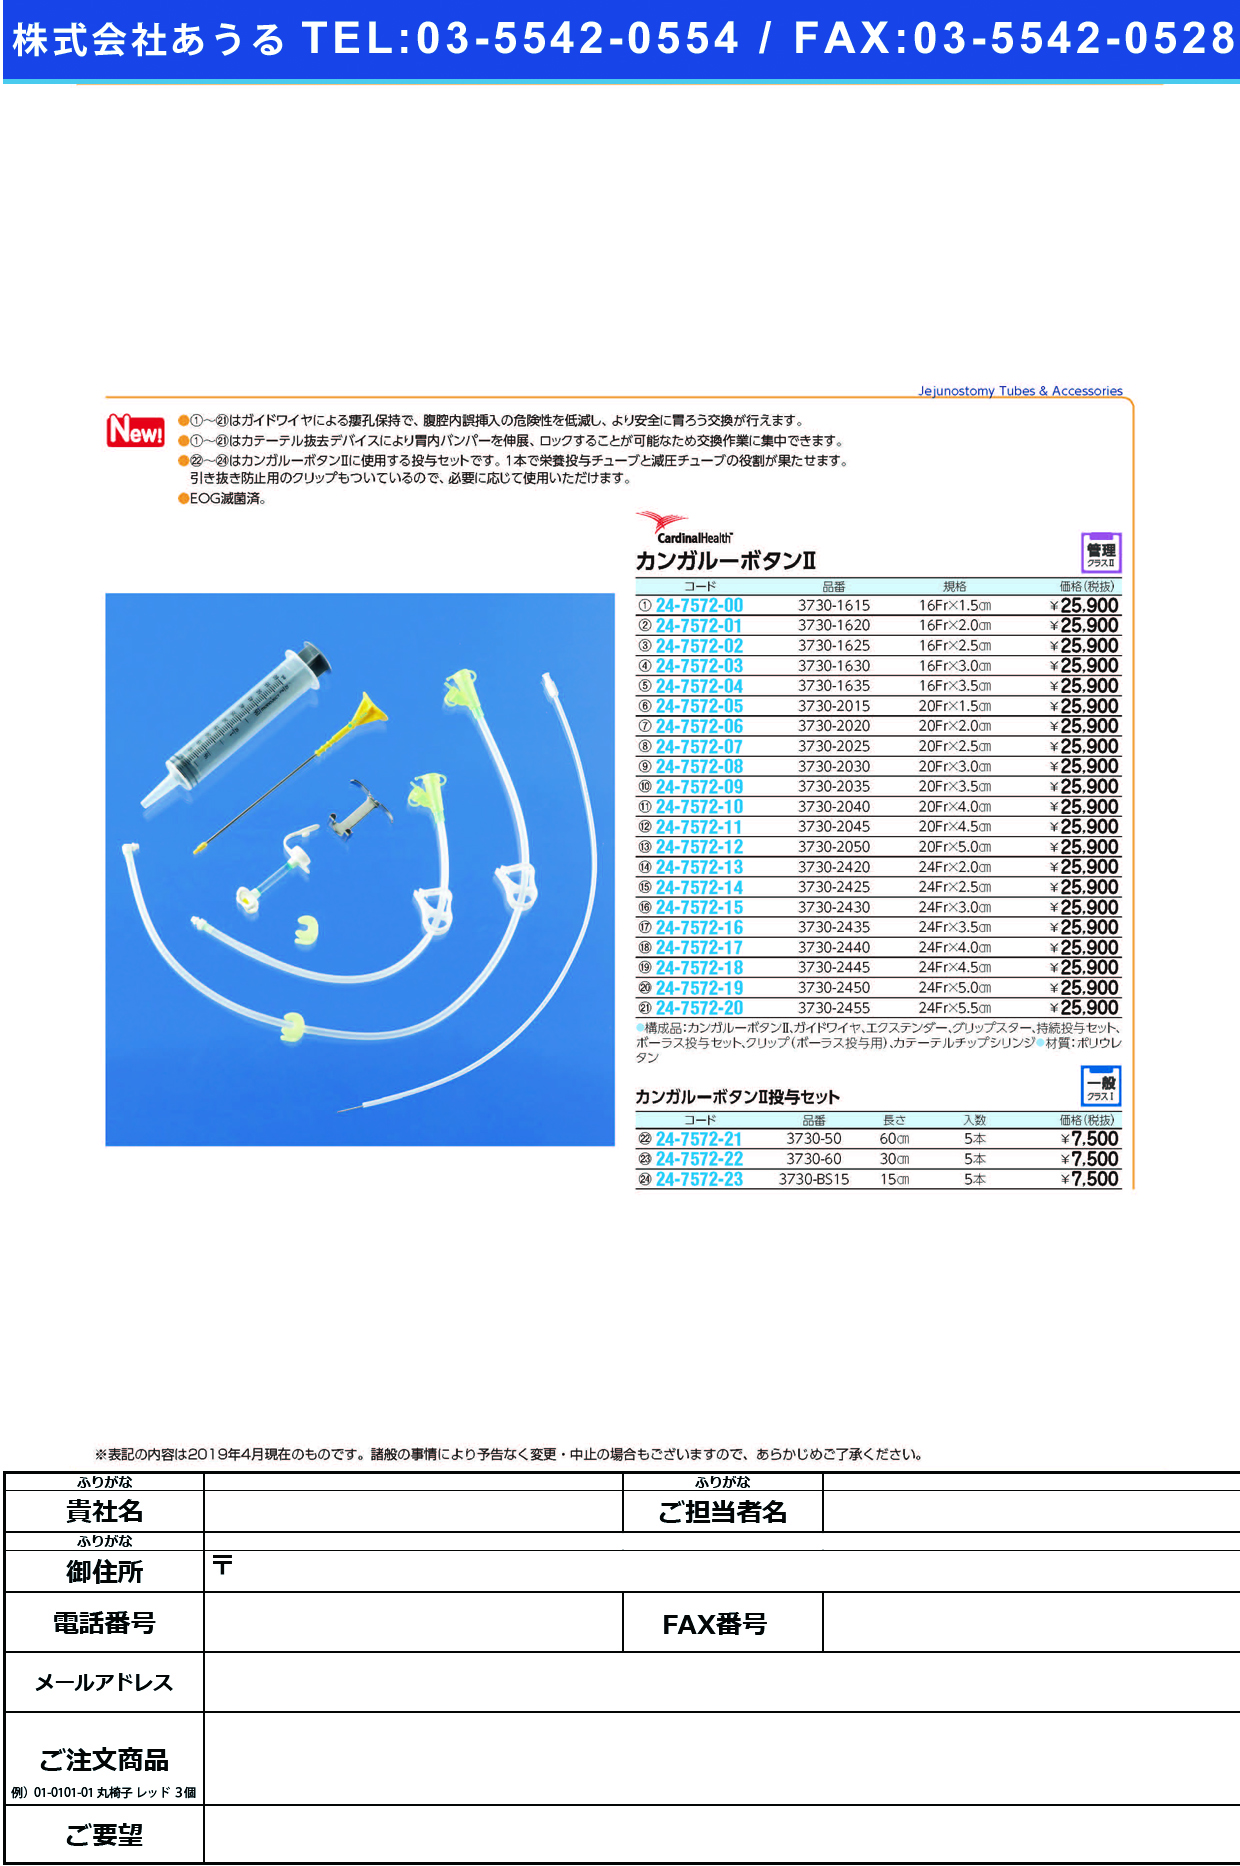 (24-7572-09)カンガルーボタンⅡ3730-2035(20FR3.5CM) ｶﾝｶﾞﾙｰﾎﾞﾀﾝ2(日本コヴィディエン)【1個単位】【2019年カタログ商品】